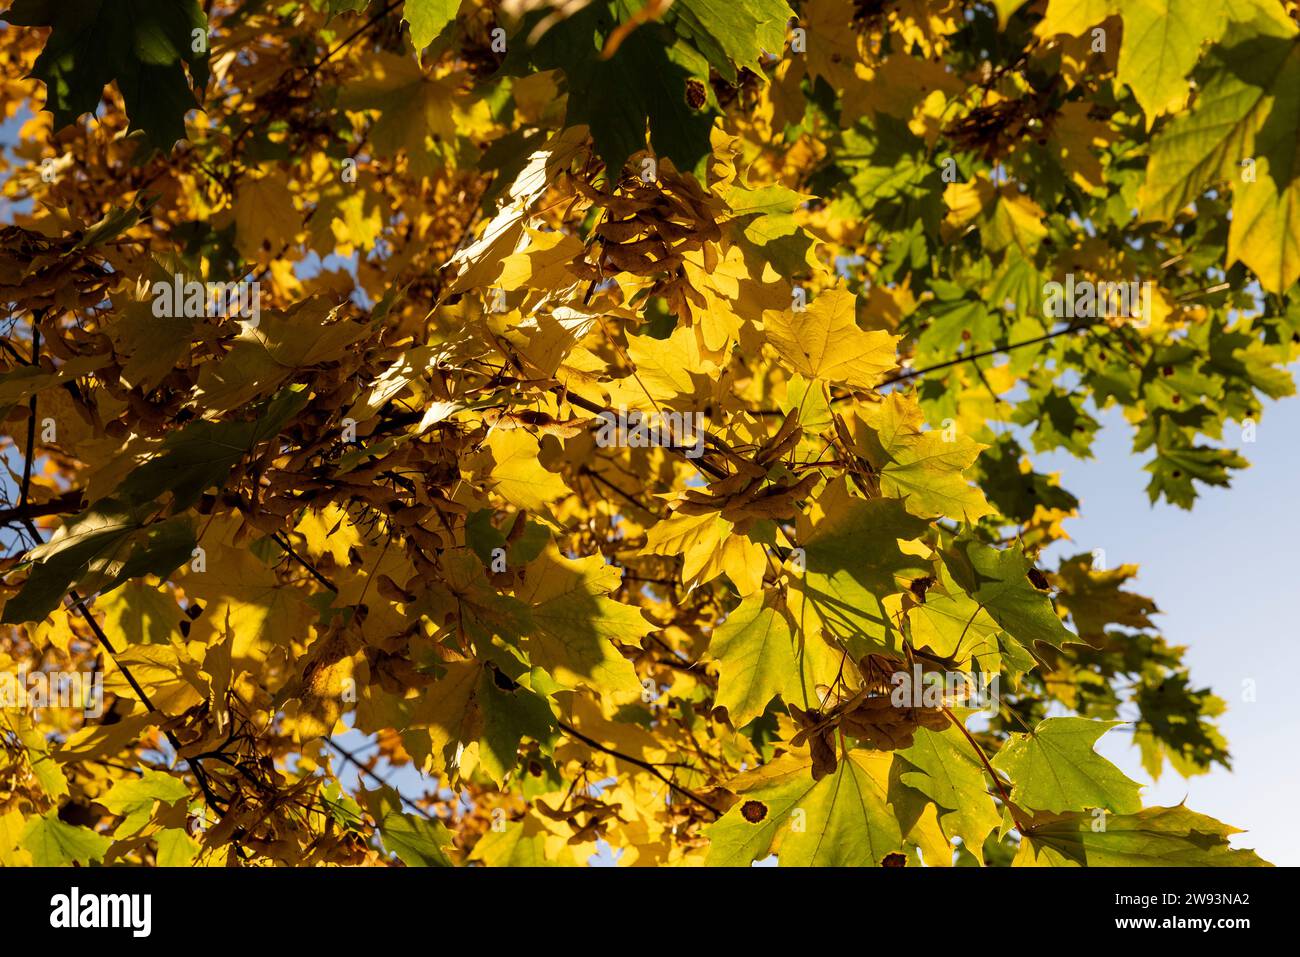 Érable pendant la saison d'automne, changements dans l'érable pendant la chute des feuilles d'automne Banque D'Images